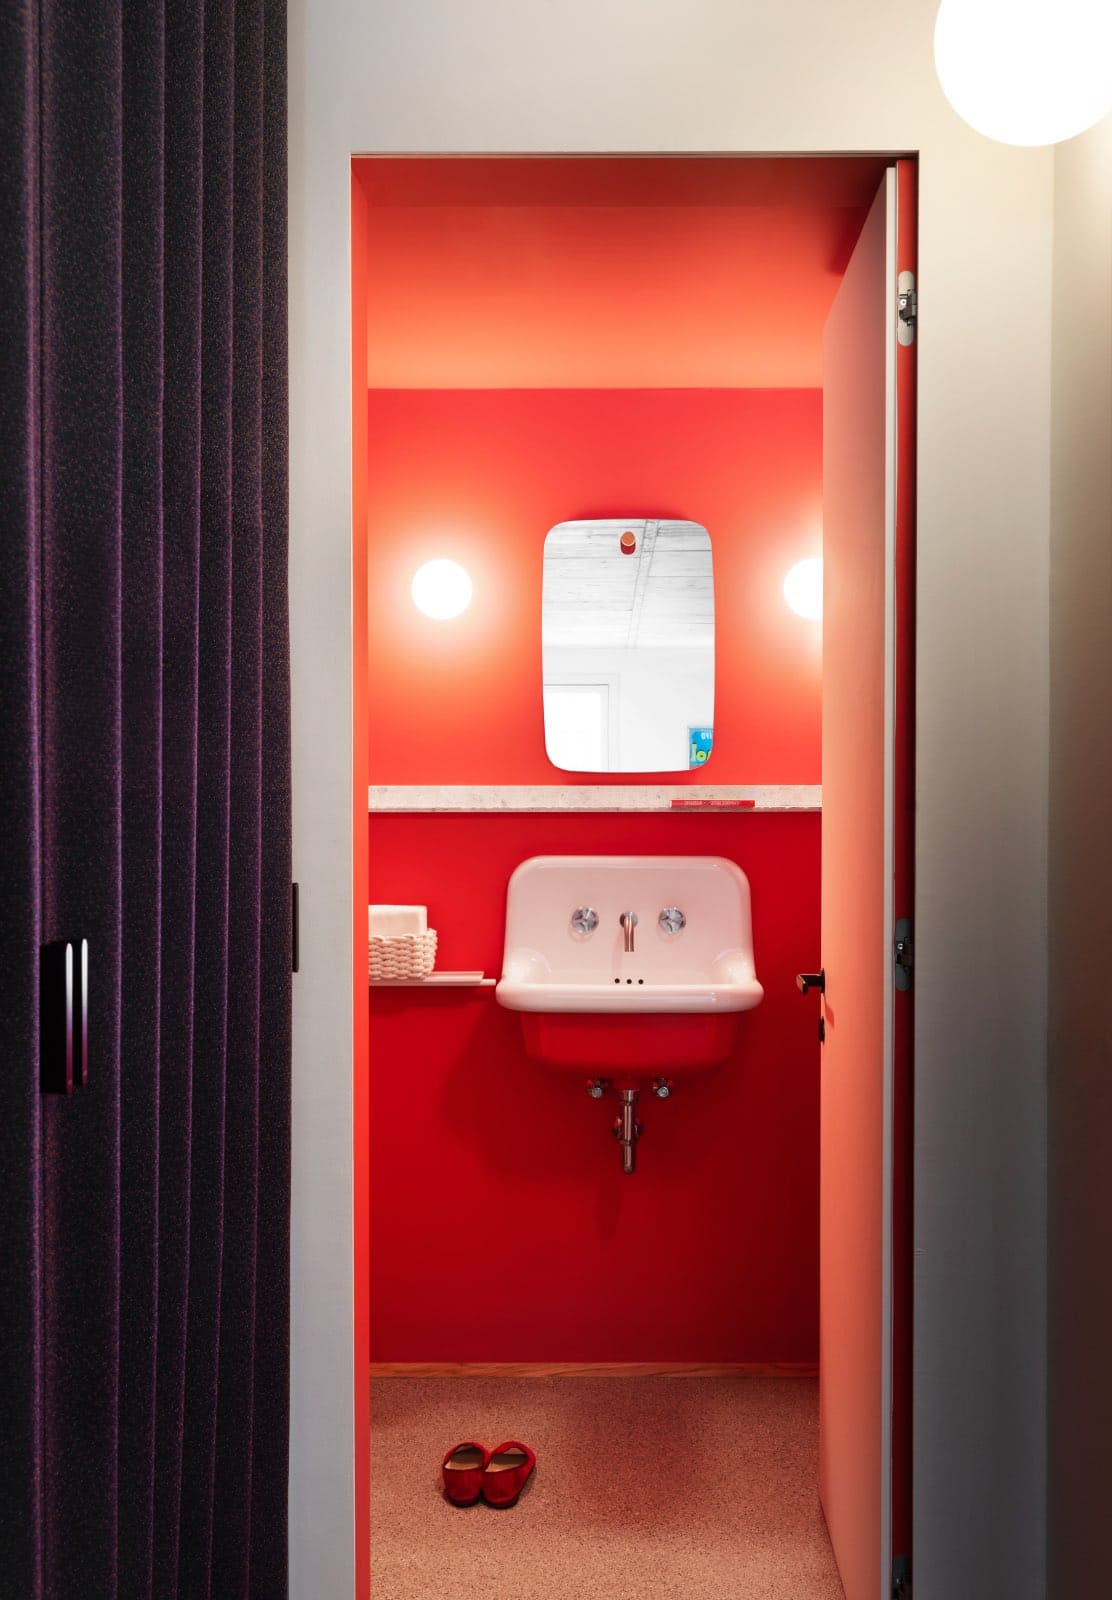 baño moderno de color rojo casa moderna